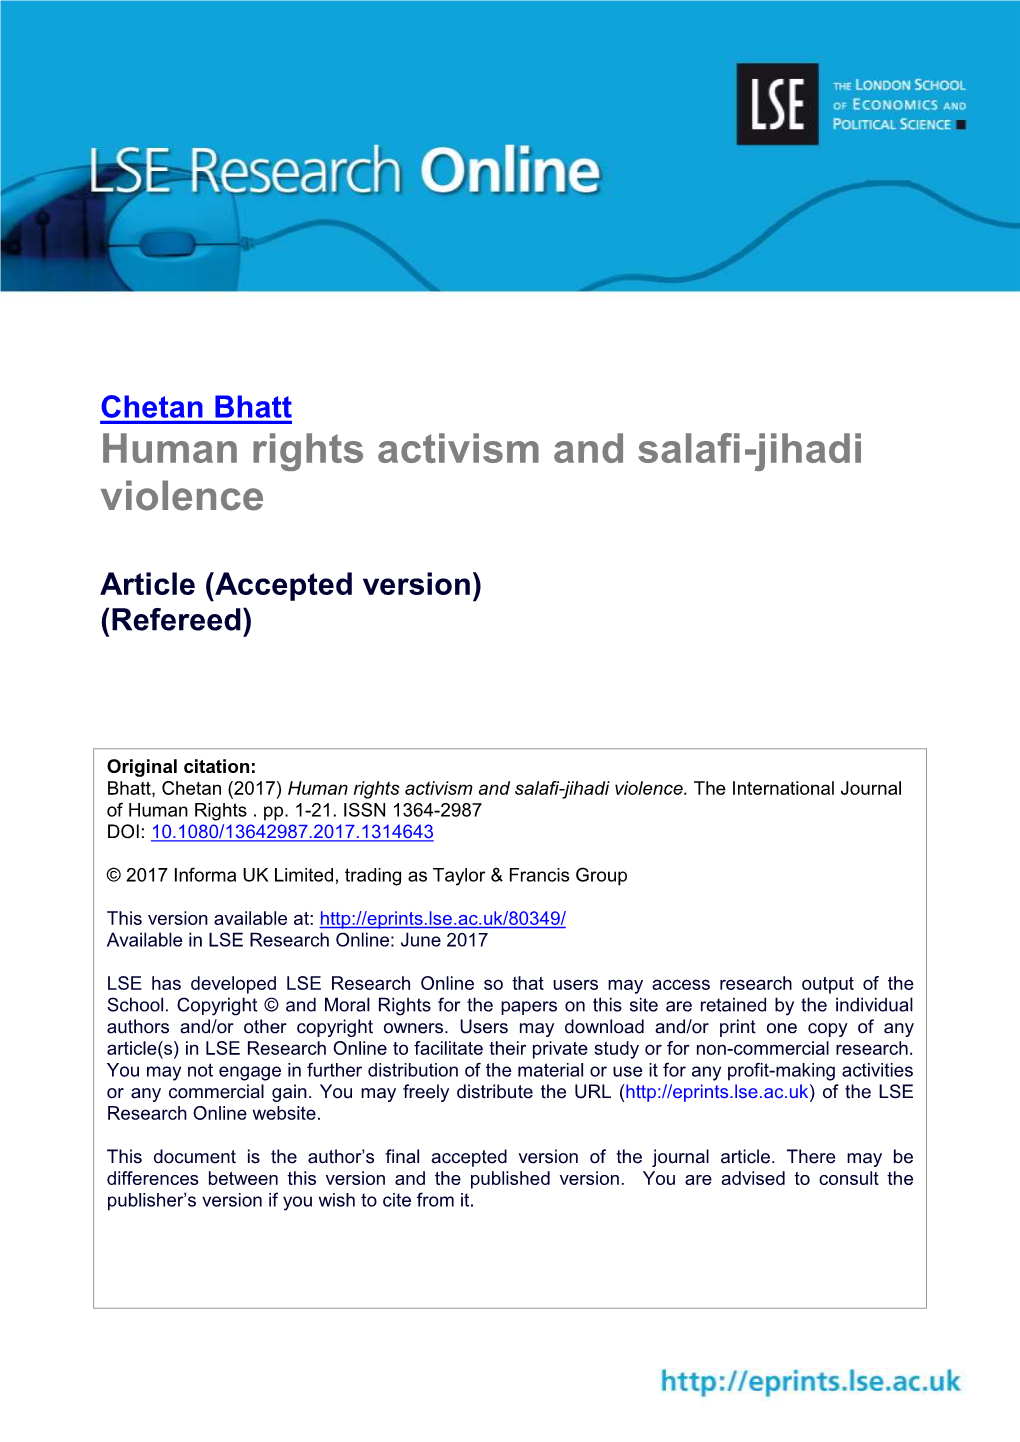 Human Rights Activism and Salafi-Jihadi Violence